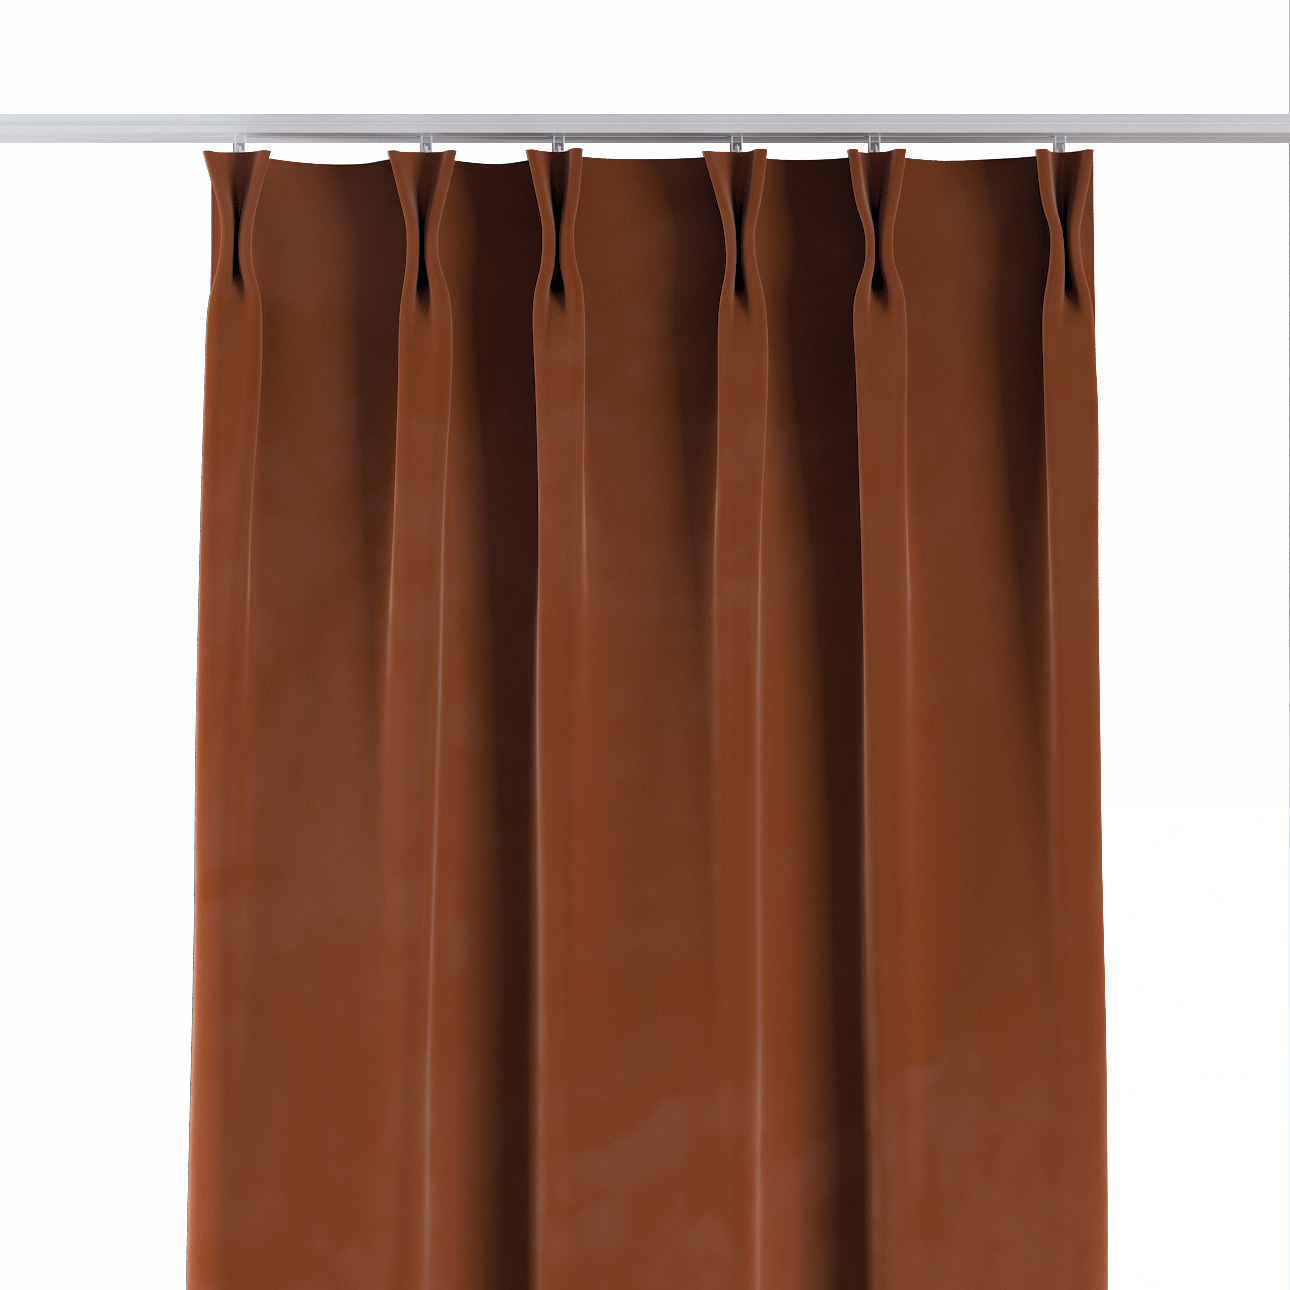 Vorhang mit flämischen 2-er Falten, braun-karamell, Velvet (704-33) günstig online kaufen